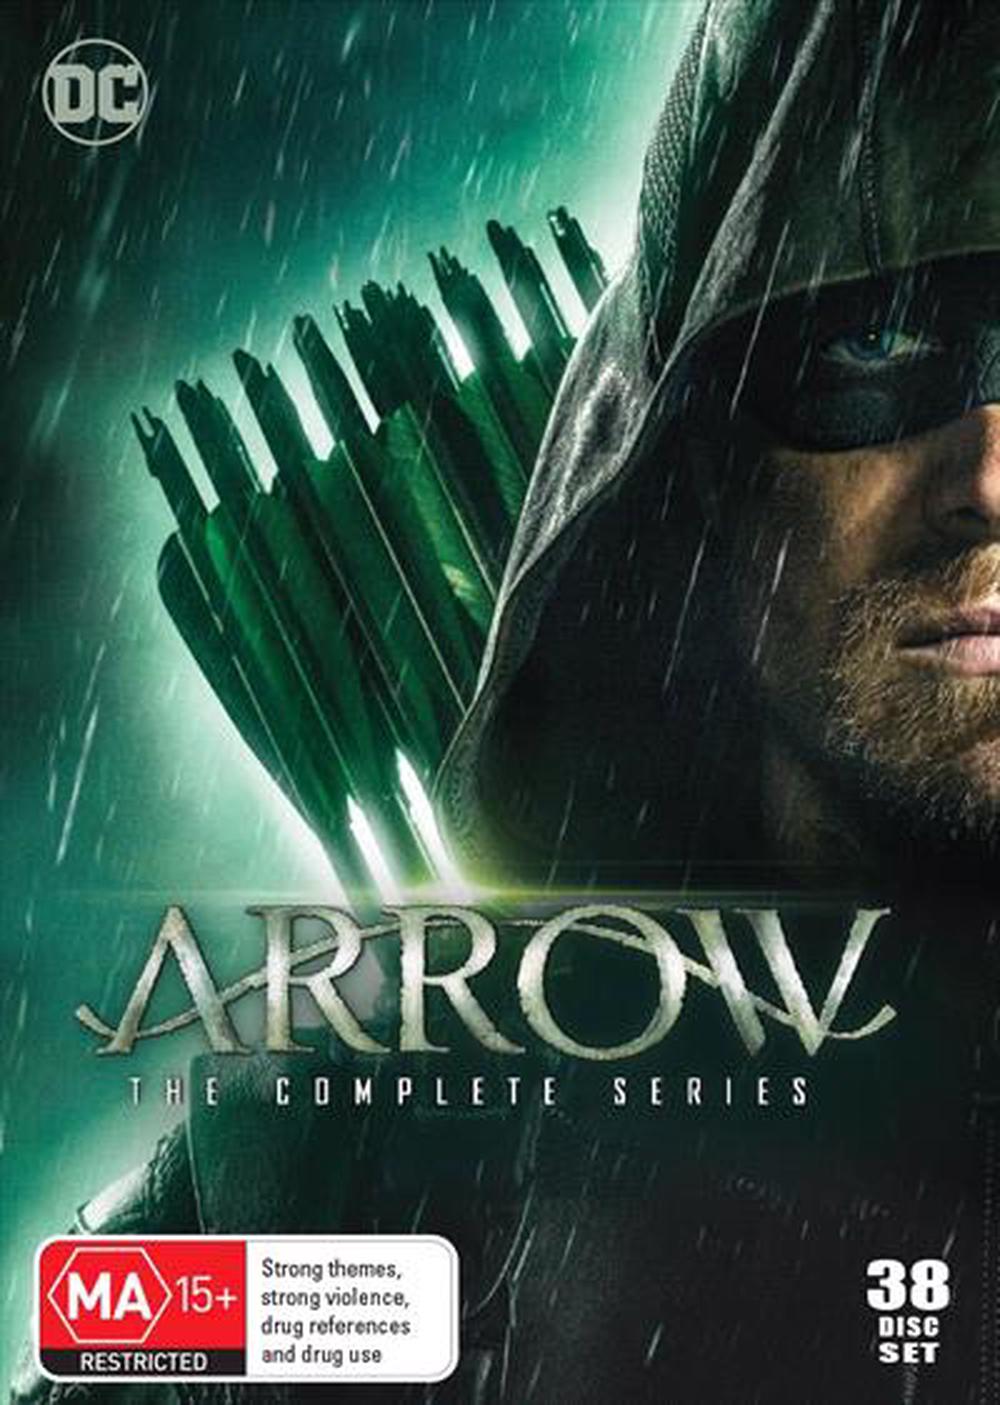 arrow season 1 summary